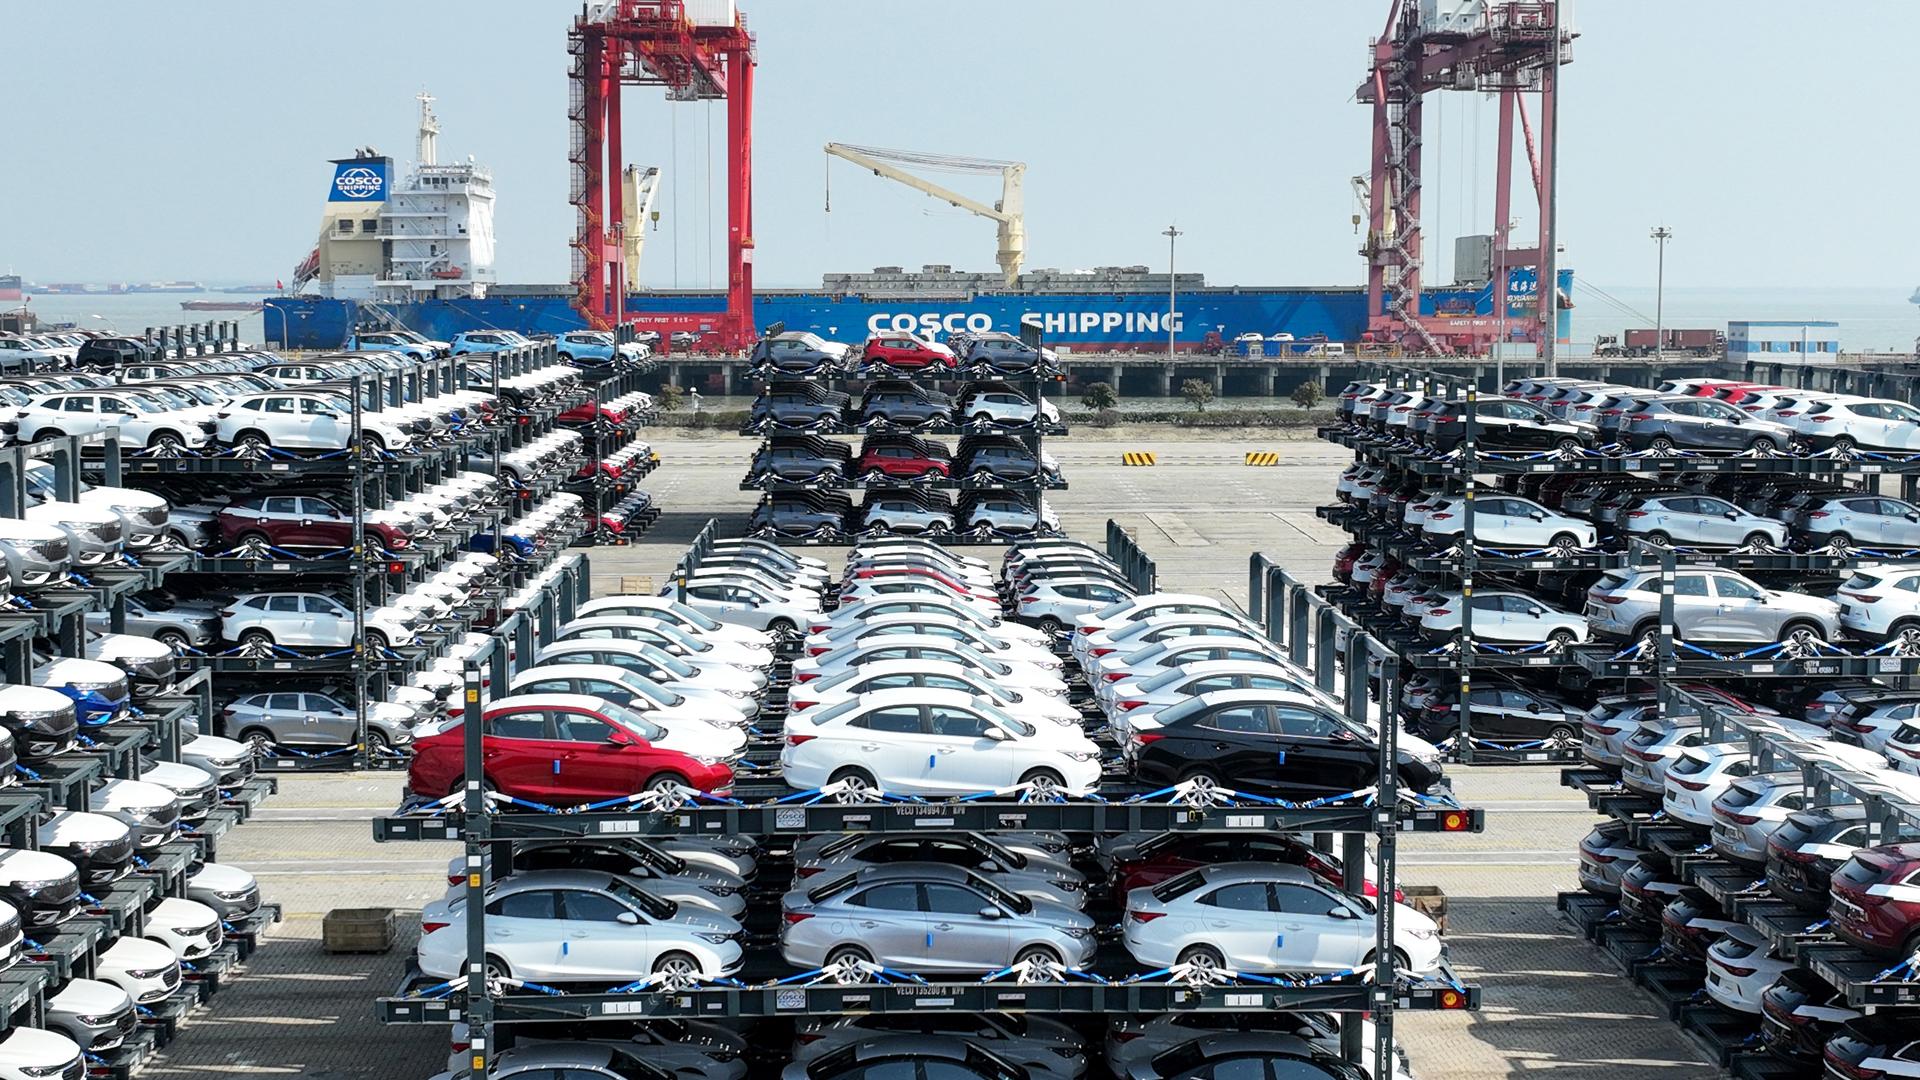 Tausende Autos stehen im Taicang Port International Container Terminal bei Schanghai in spezillen Transportrahmen. Im Hintergrund ein Schiff der Cosco-Reederei und Kräne.